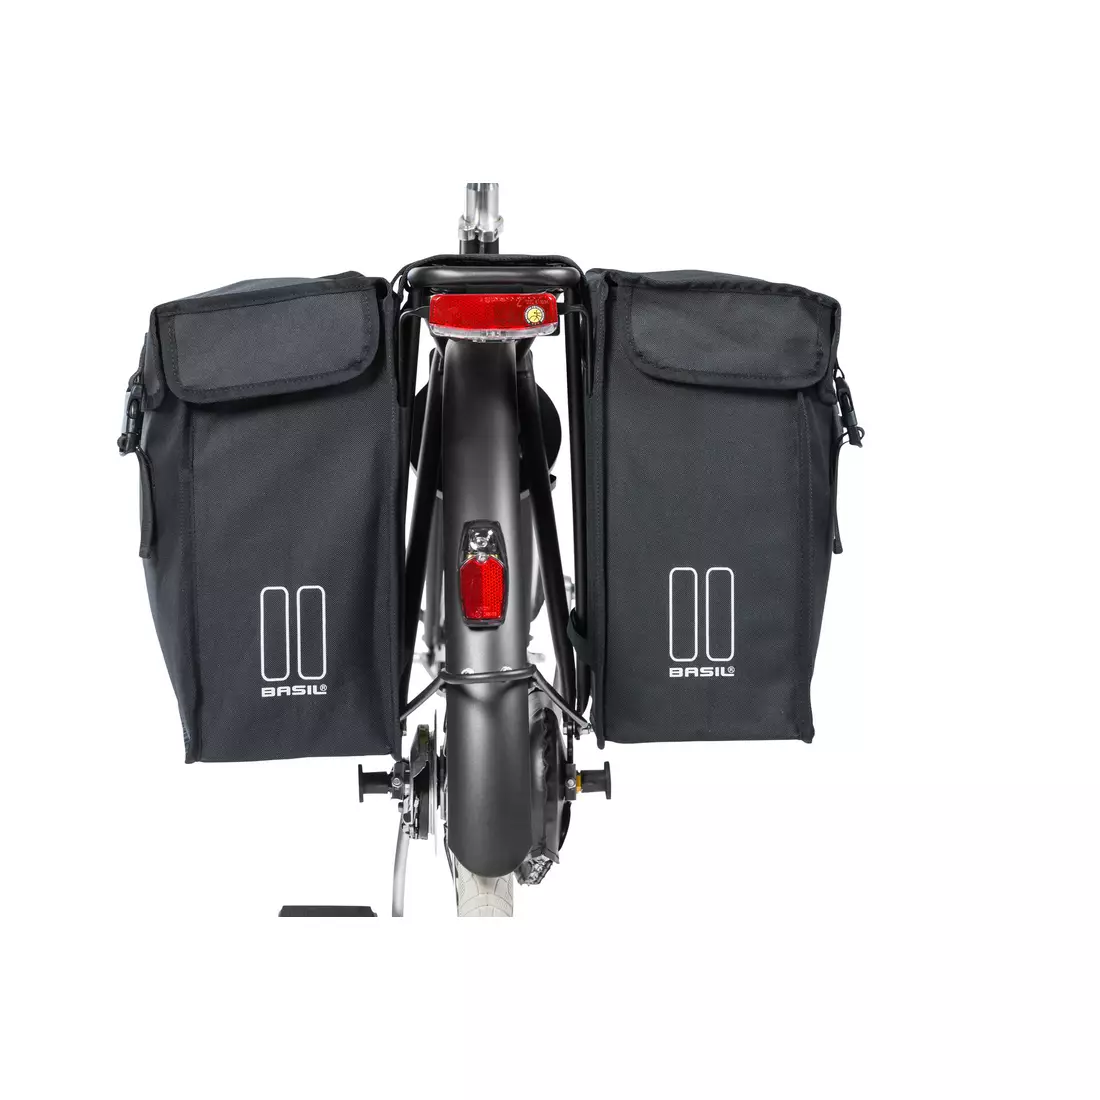 Dvojitý městský cyklistický kufr BASIL MARA XXL 47L, zapínání na popruhy, voděodolný polyester, Černá BAS-17395